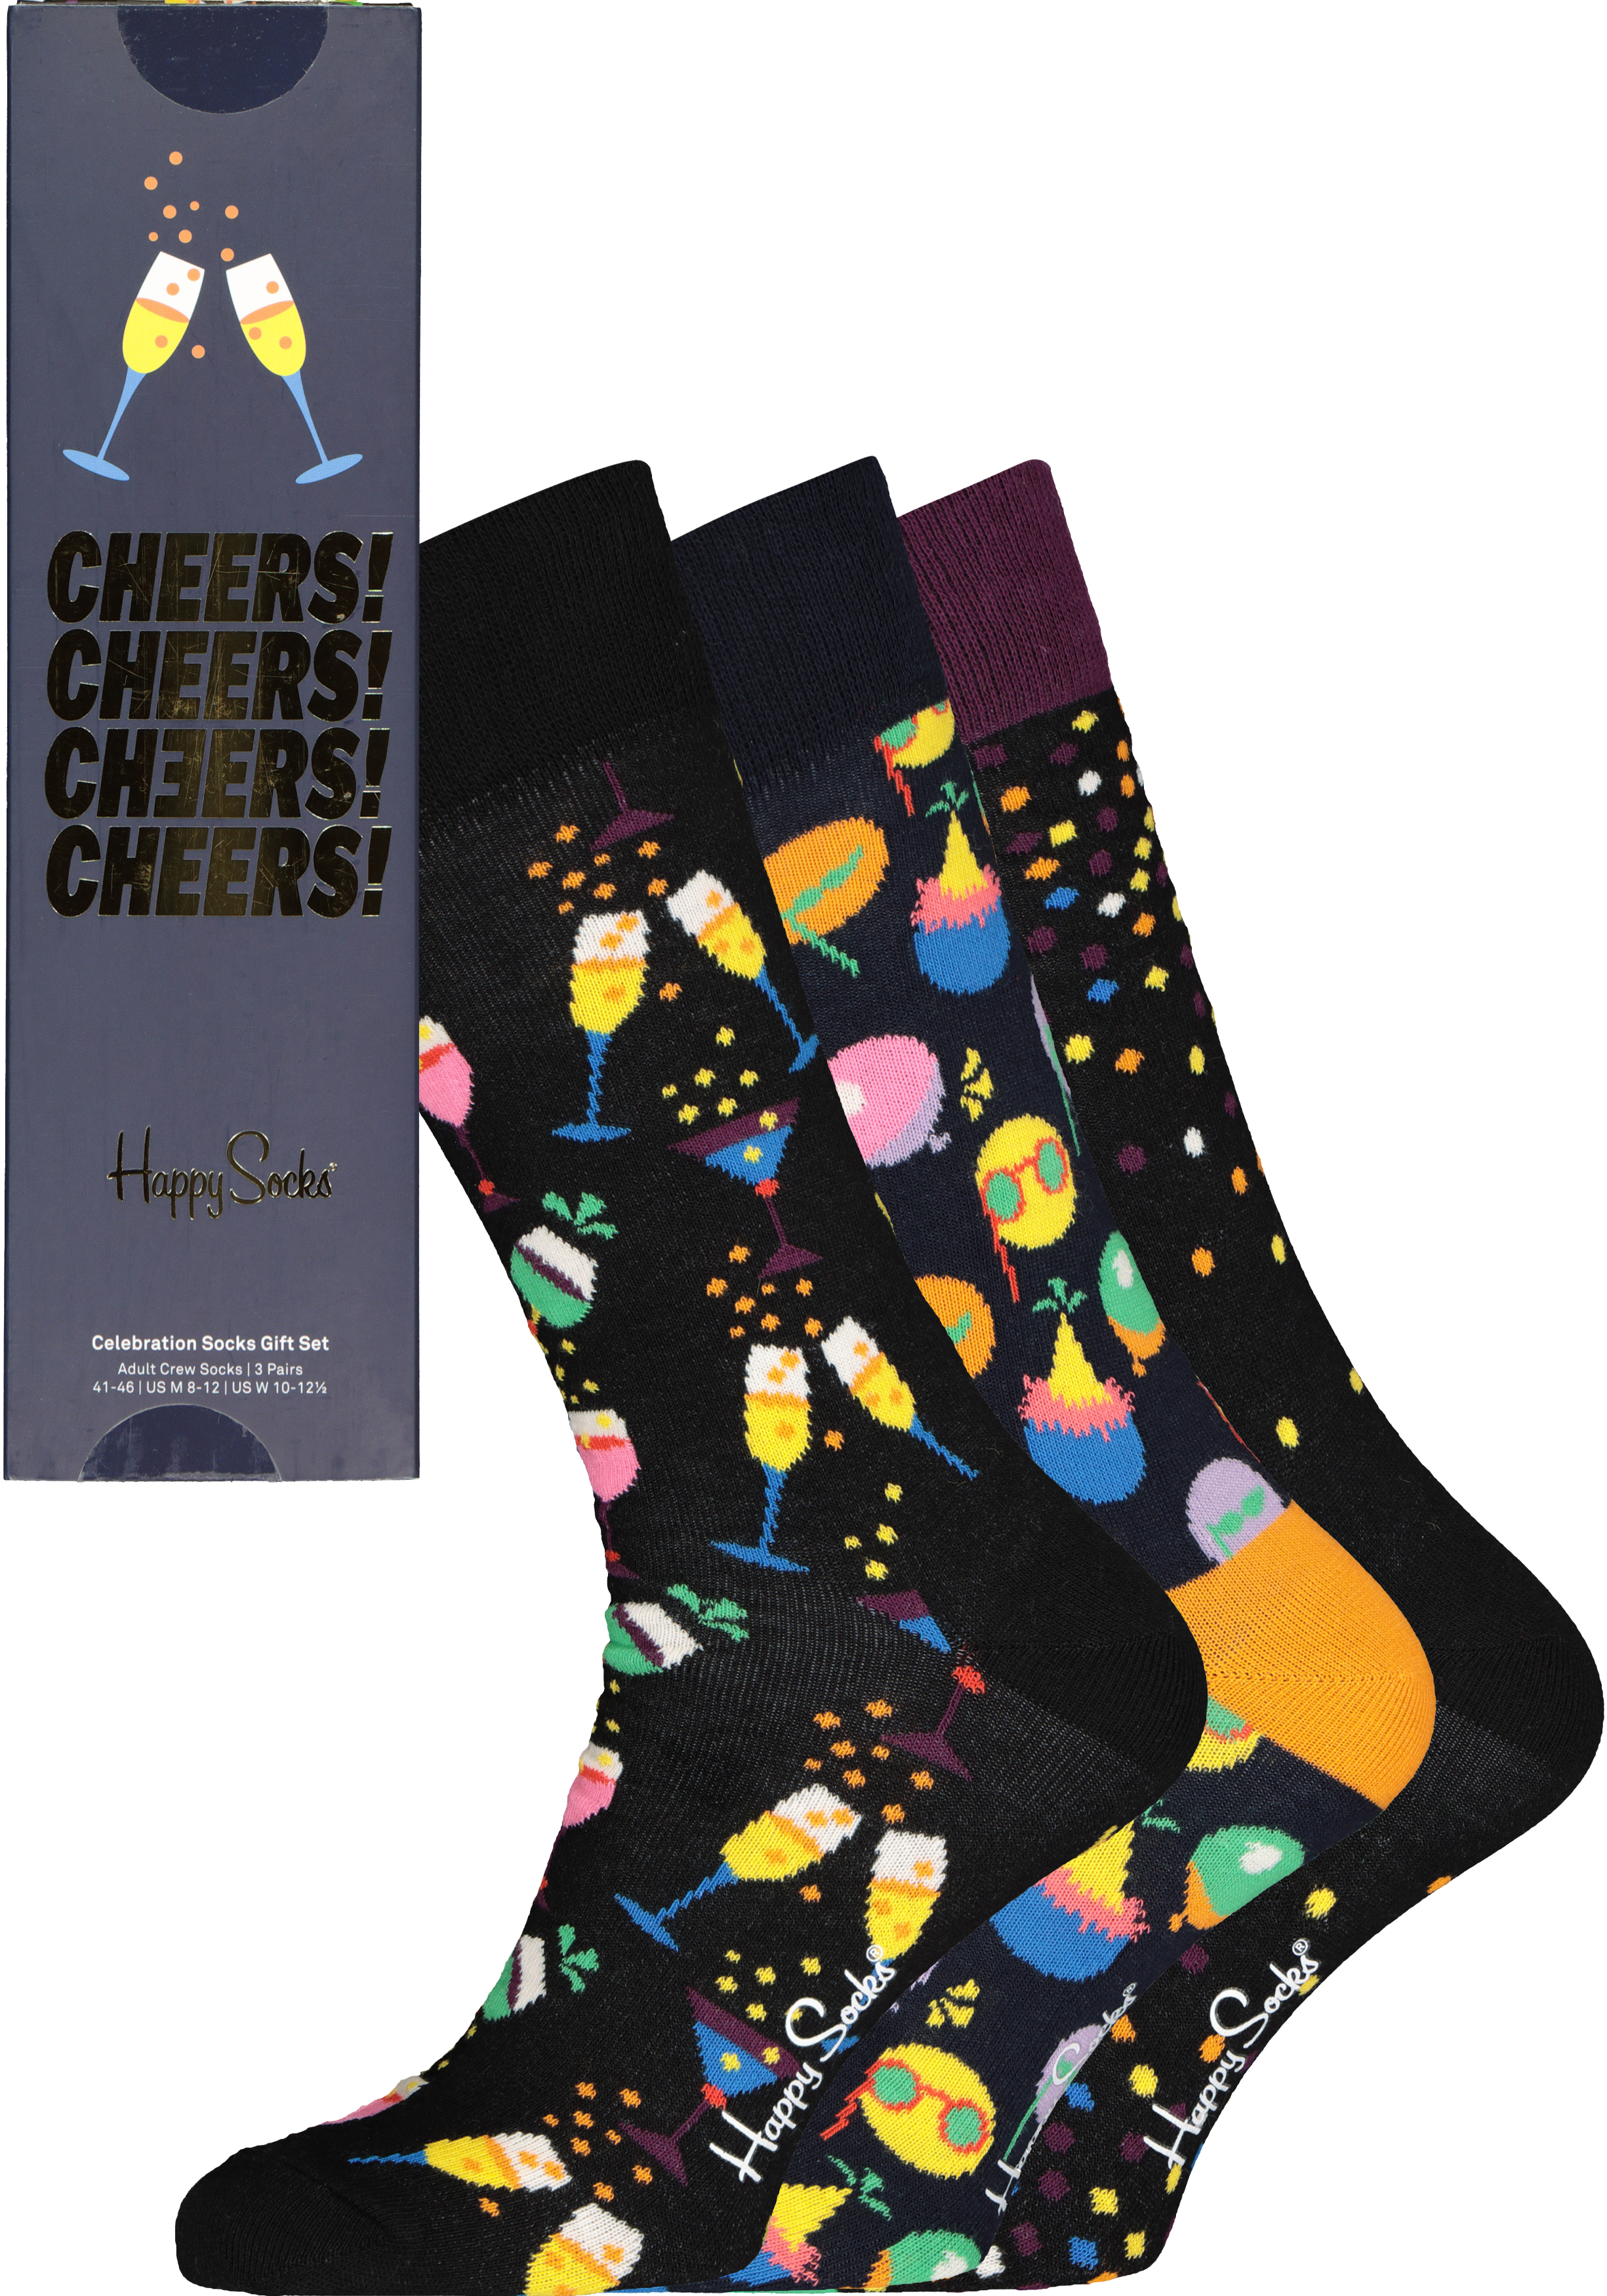 Happy Socks Celebration Socks Gift Set (3-pack), feest met kleur